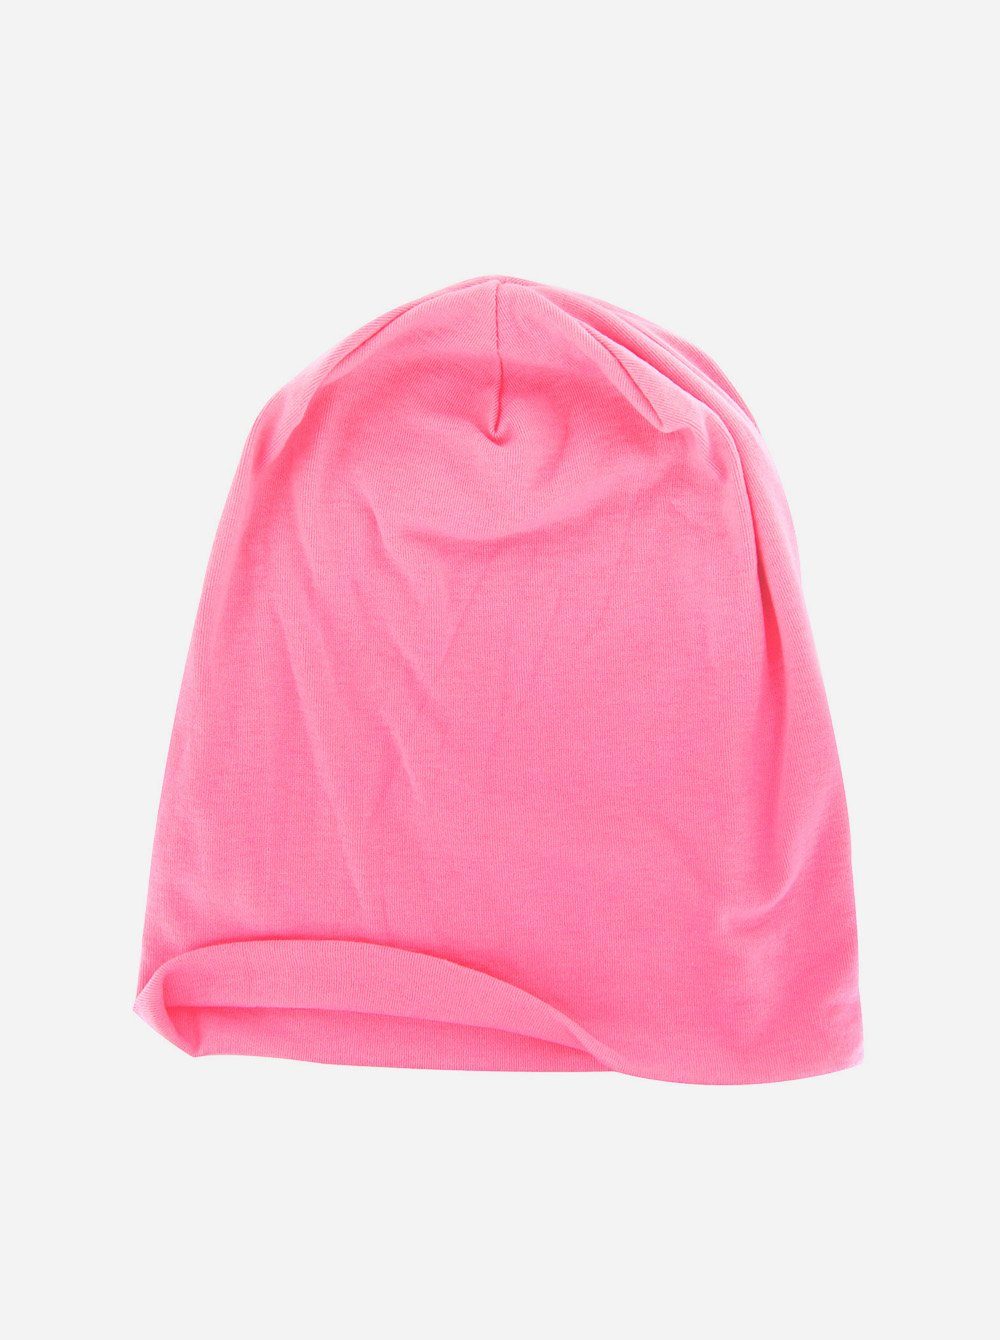 axy Beanie Slouch Beanie Pink Beanie Uni Herren Damen Uni Mütze klassischer Mütze Slouch